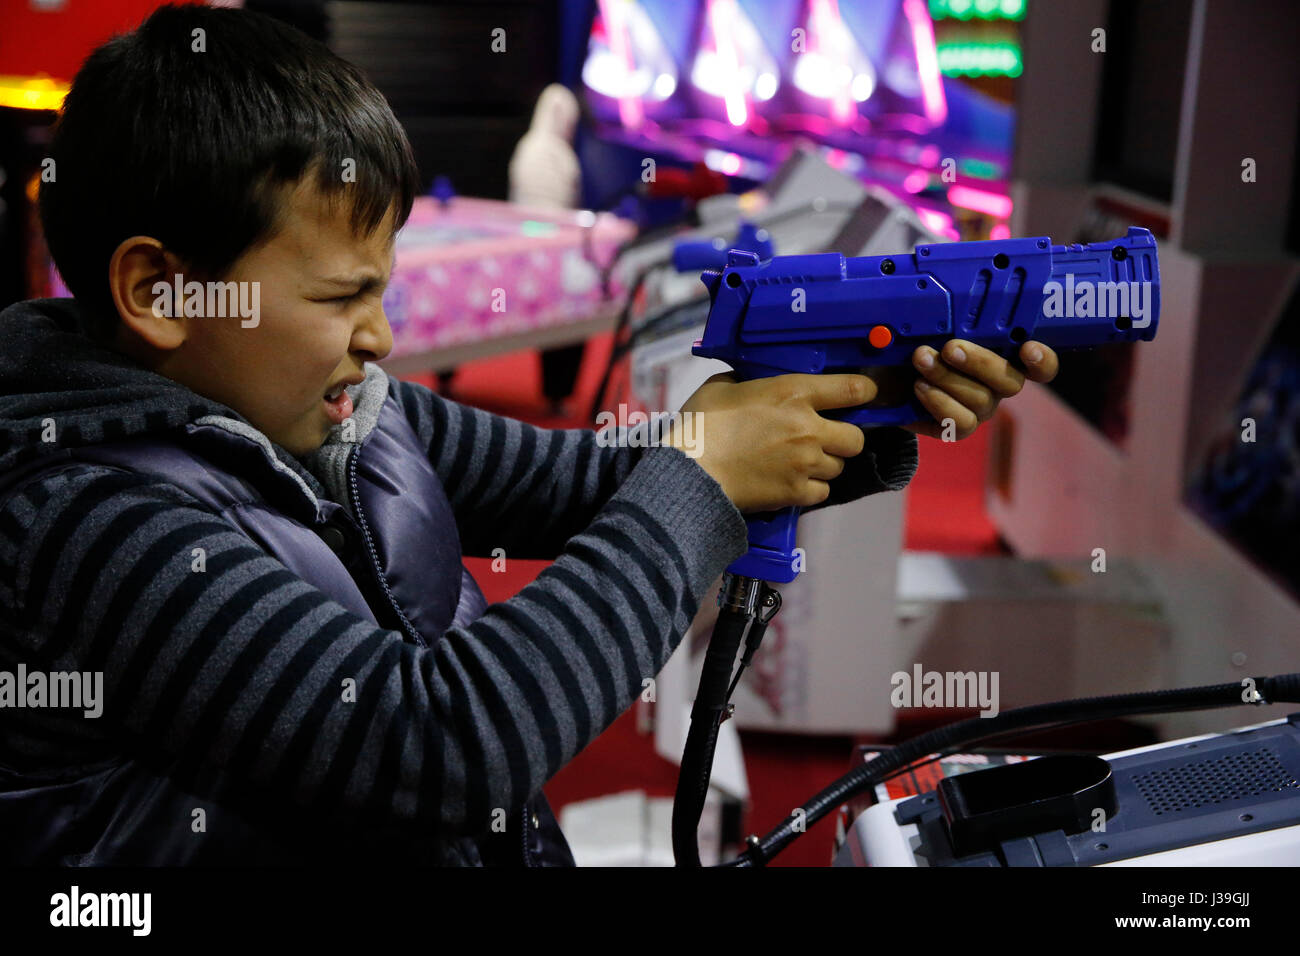 Garçon de 10 ans dans une salle de jeux. Foto Stock